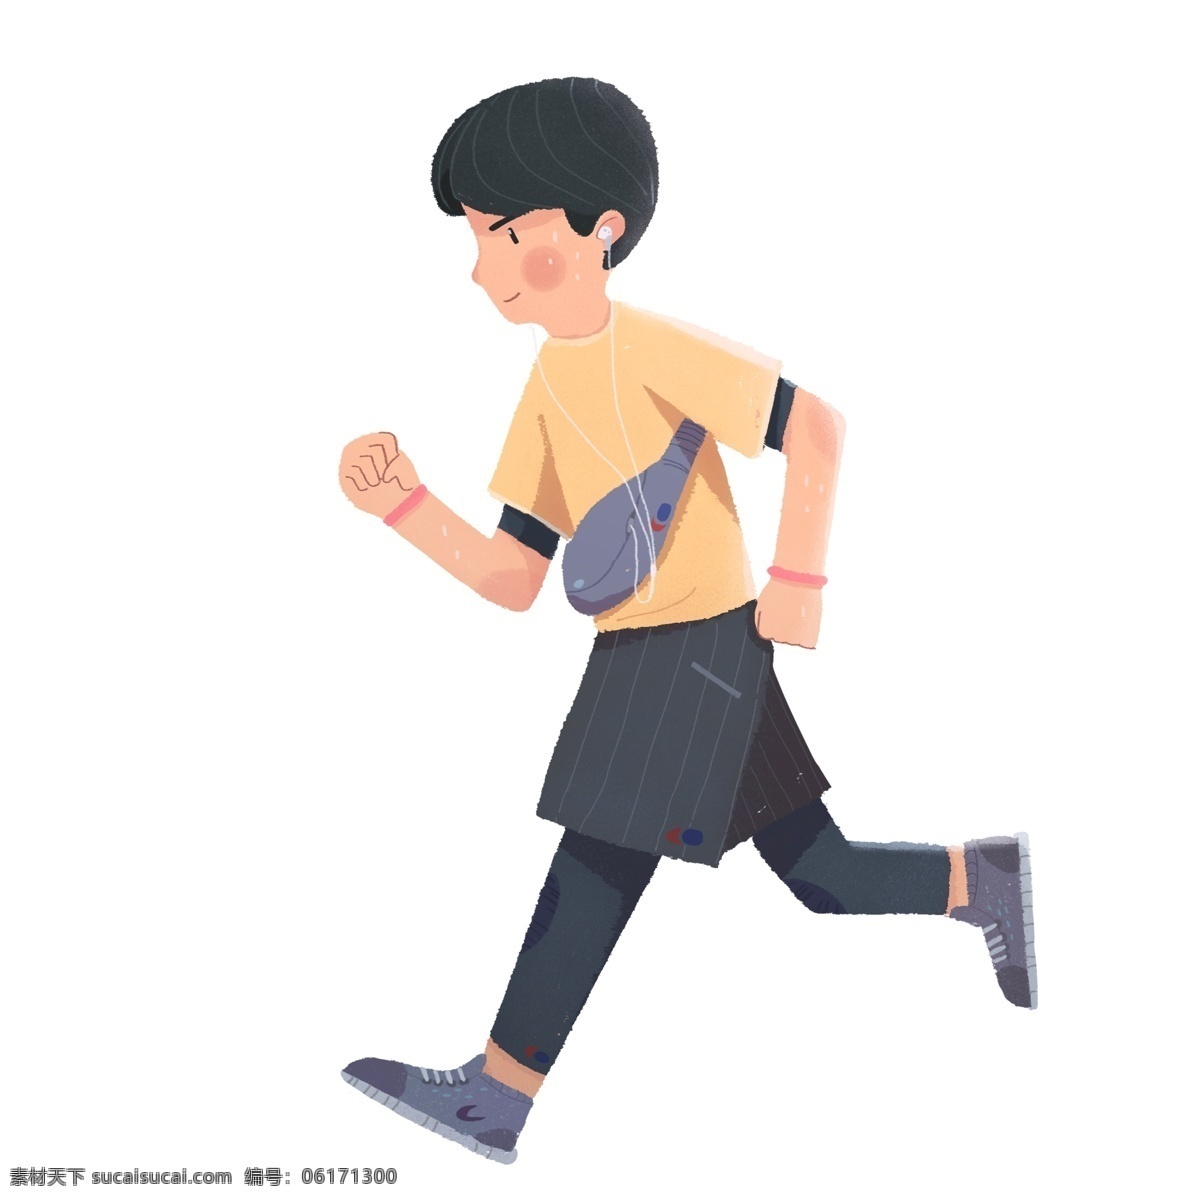 卡通 可爱 听 音乐 健身 少年 人物 跑步 运动 男孩